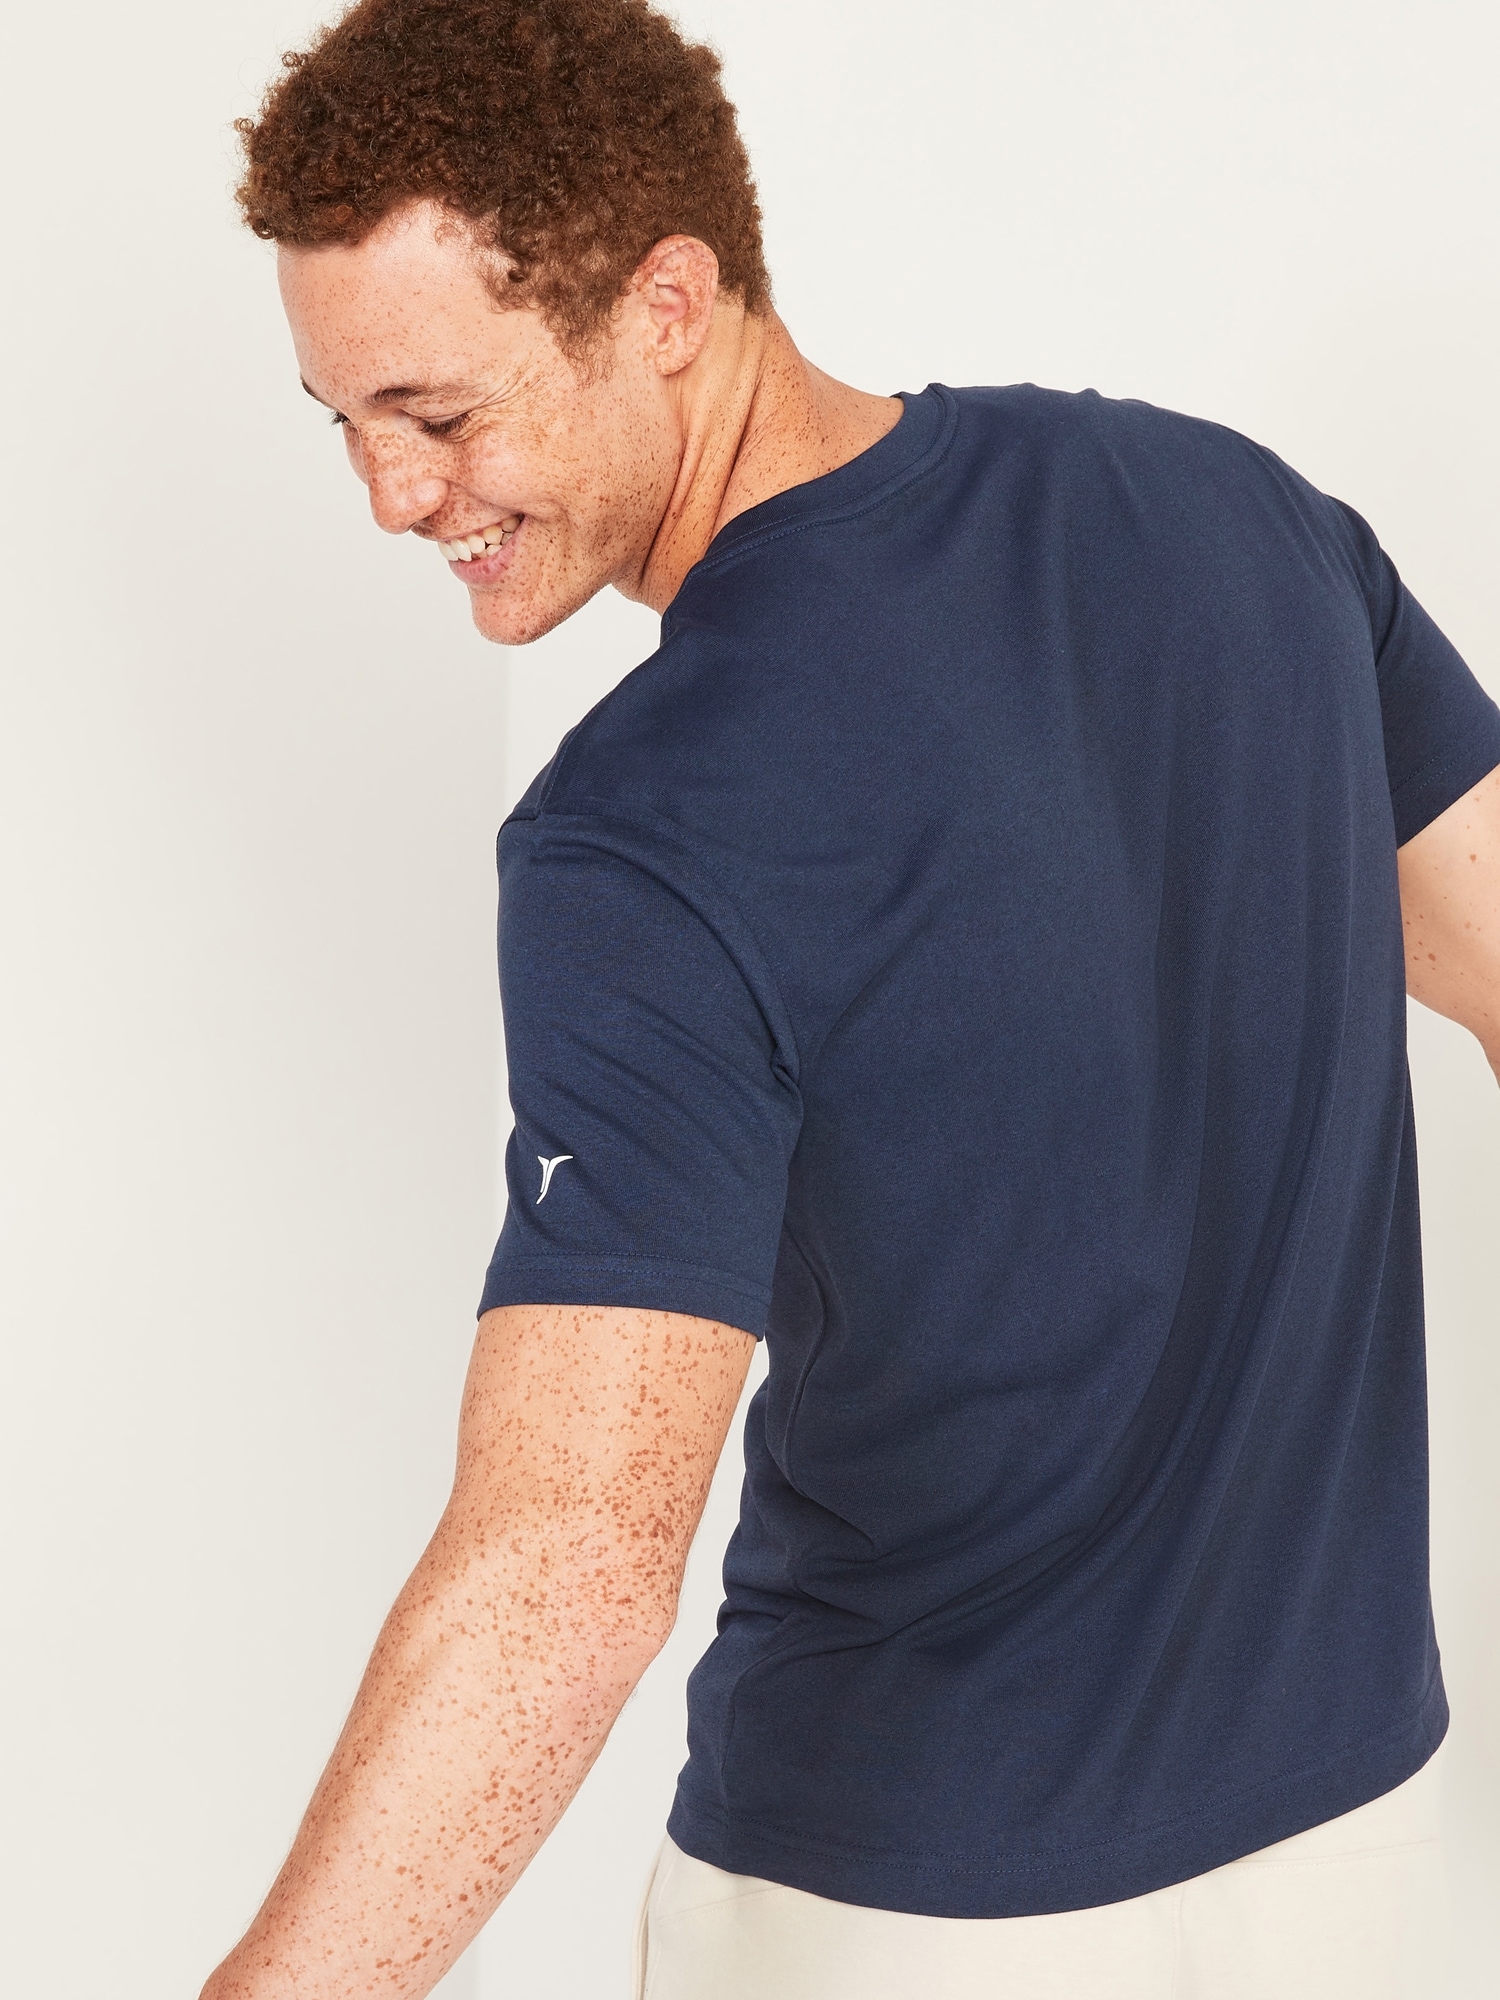 rijk hoop hoofdonderwijzer Go-Dry Cool Odor-Control Core T-Shirt for Men | Old Navy